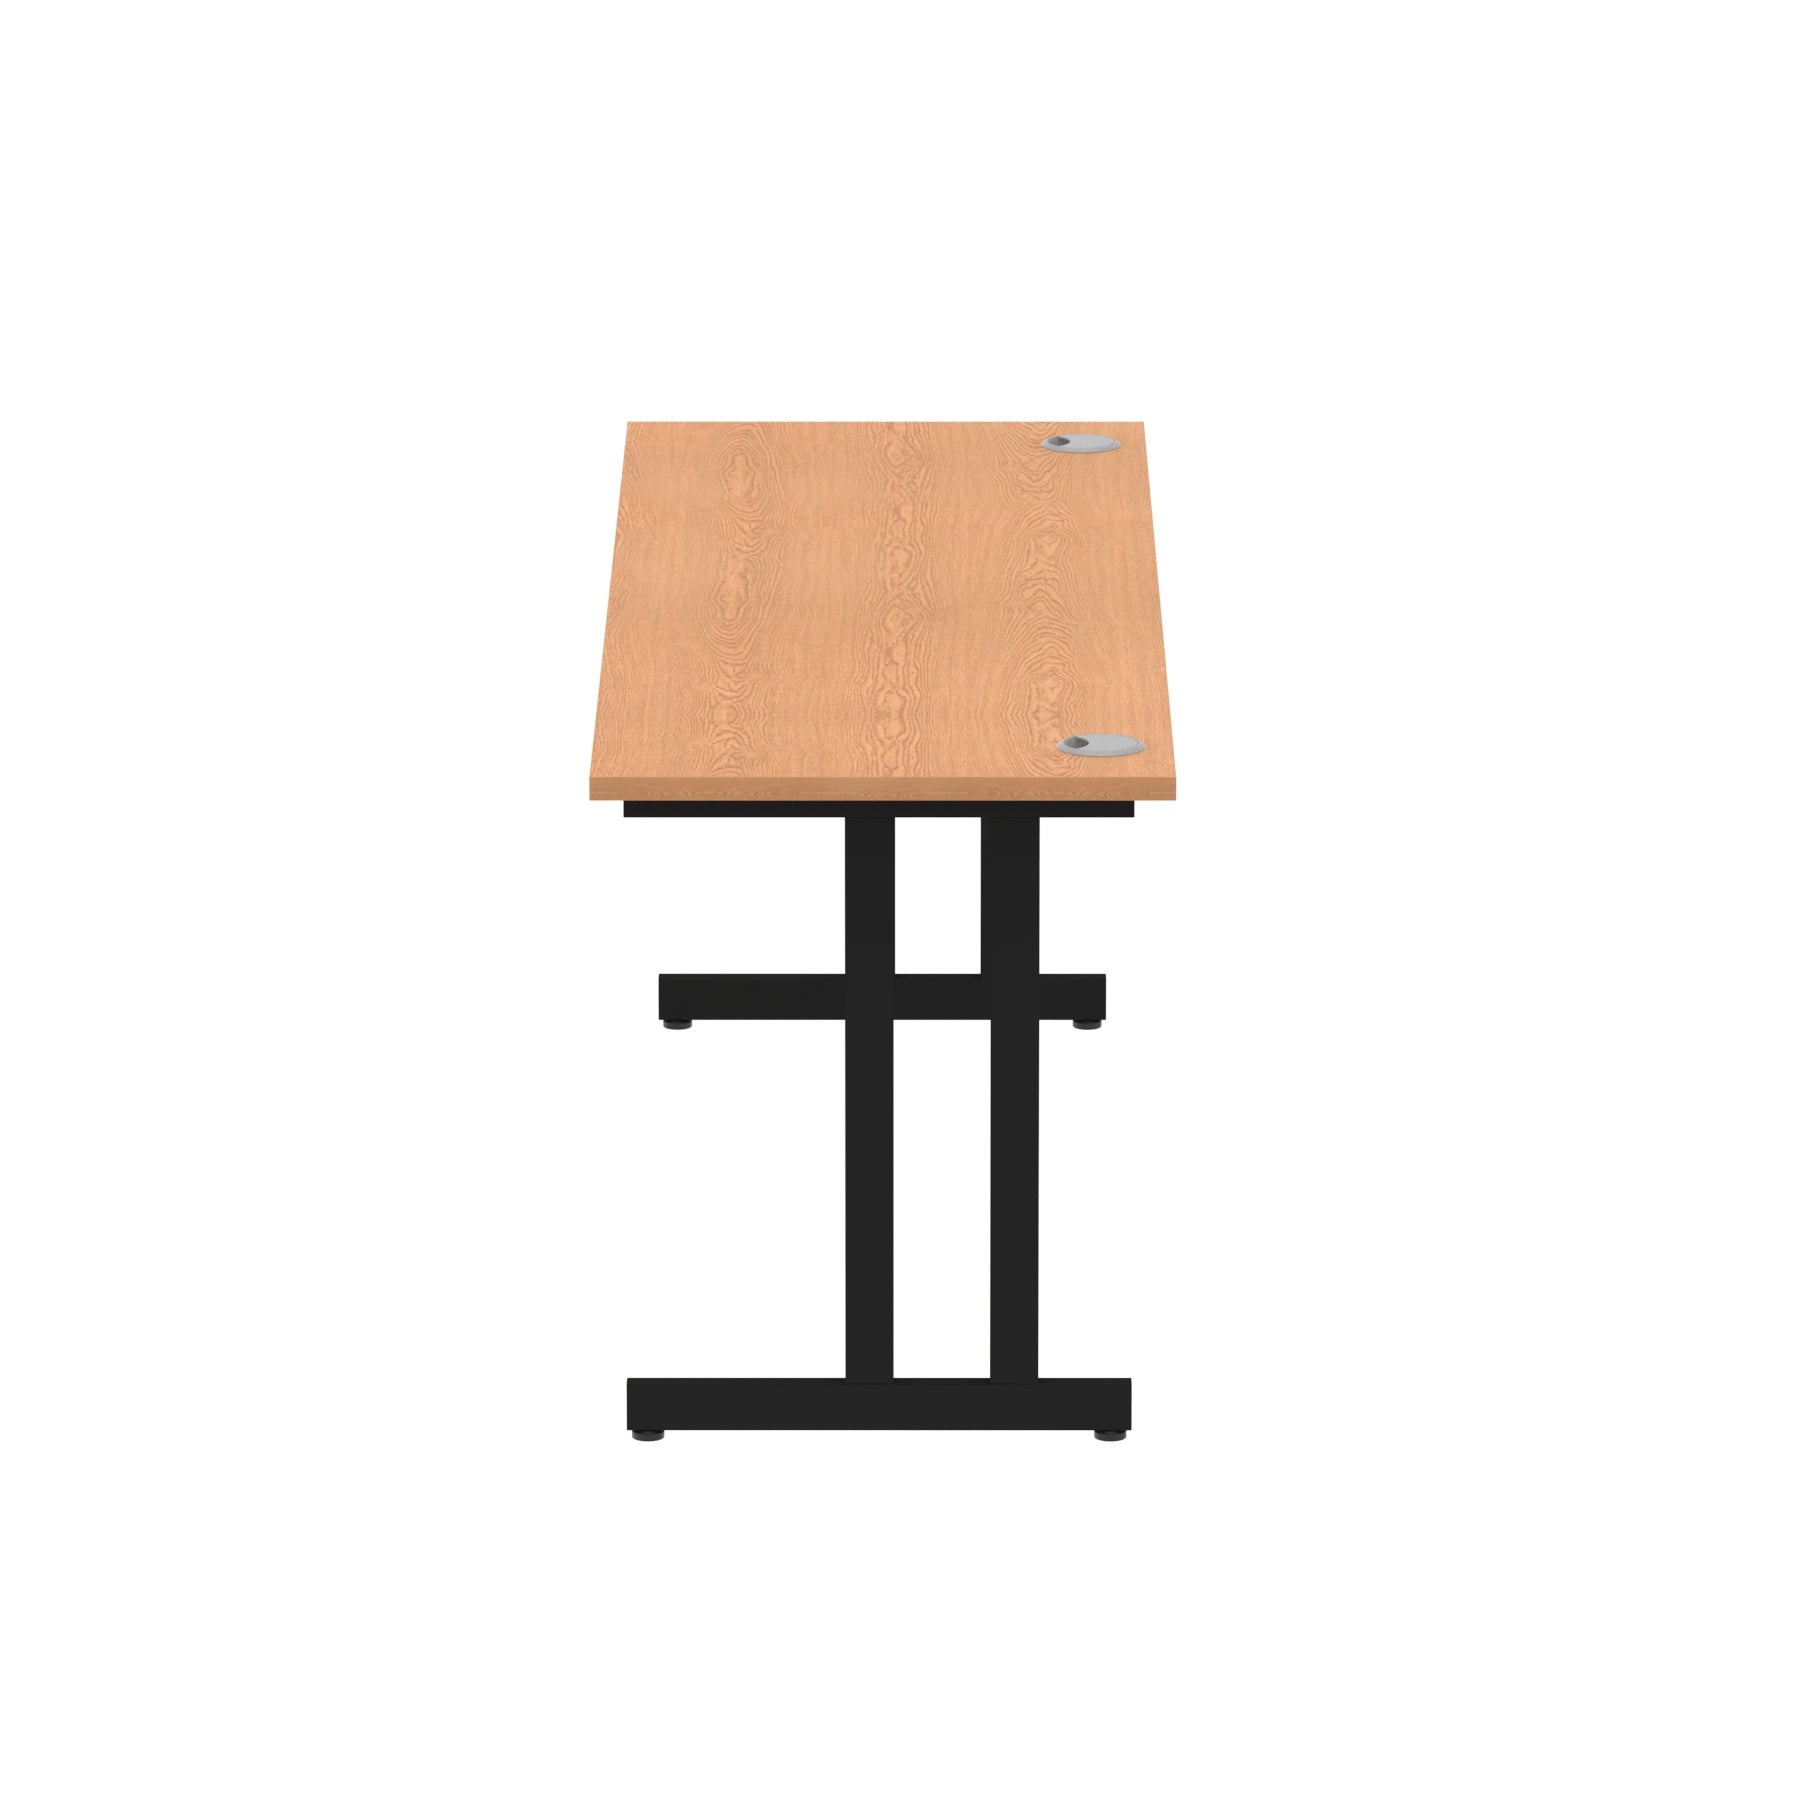 Impulse 1800mm Slimline Desk Cantilever Leg